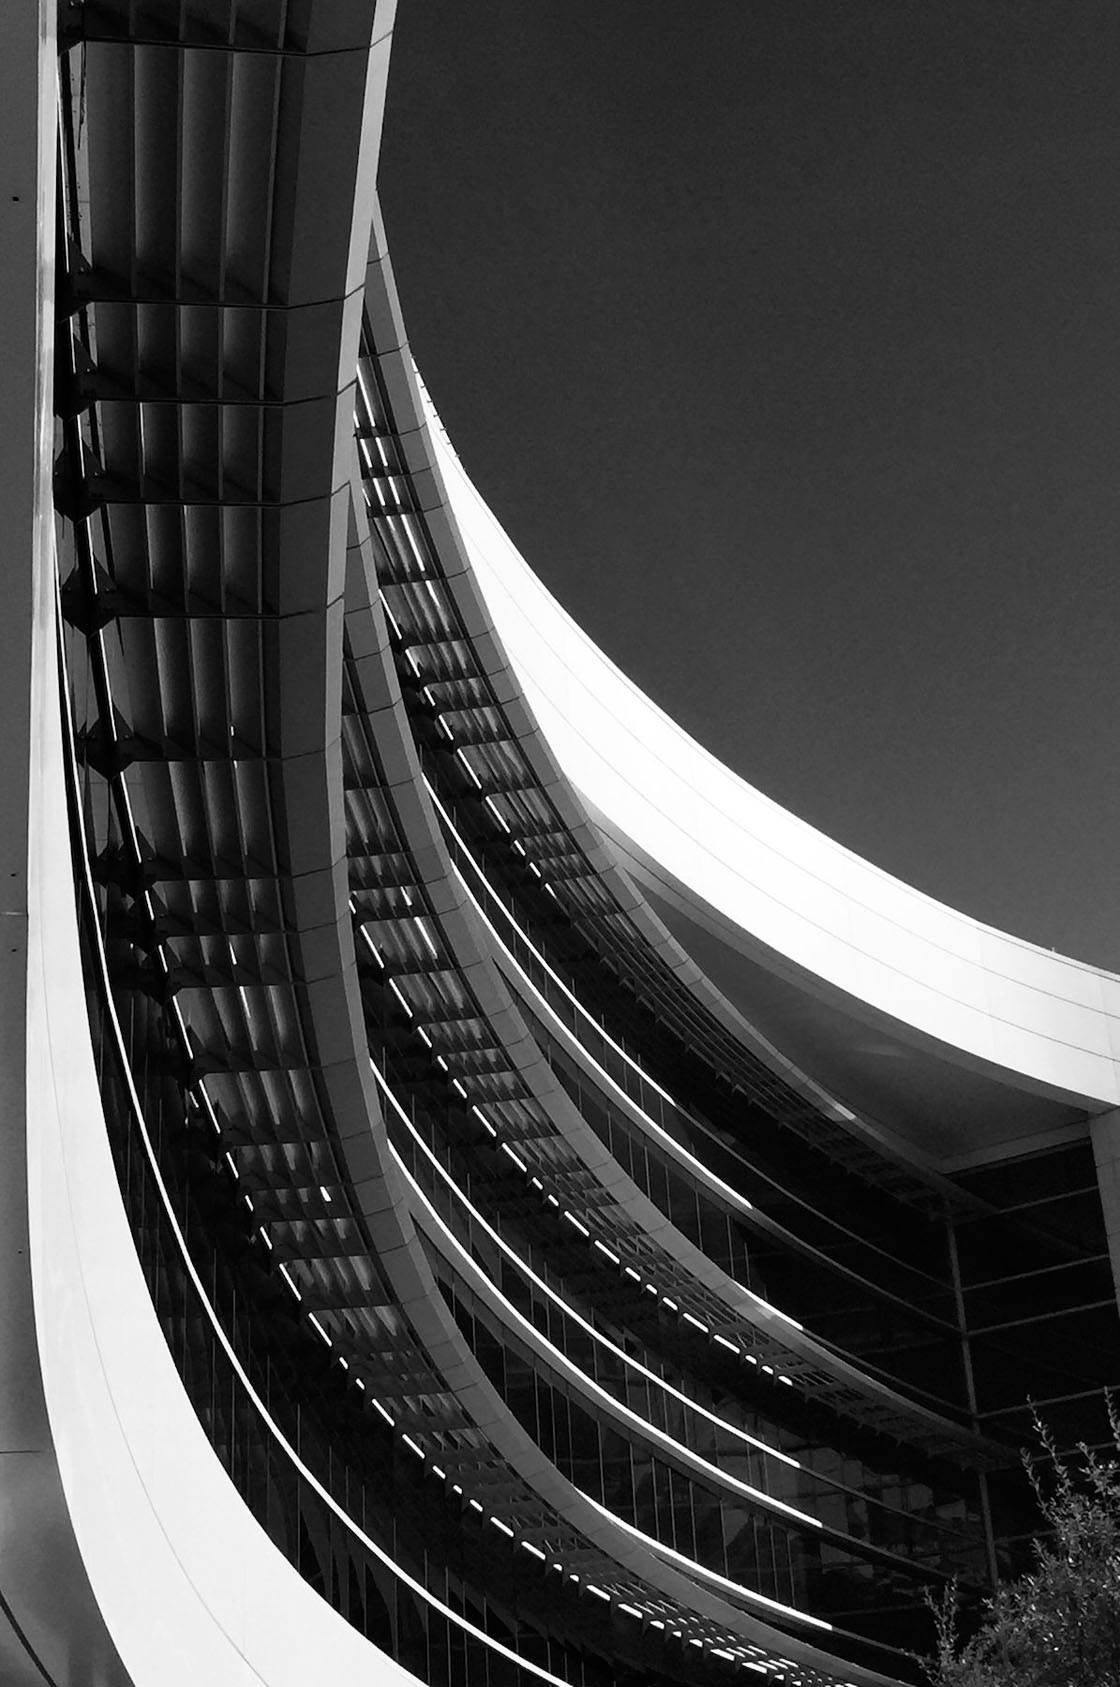 Architecture Composition iPhone Photos 6 no script